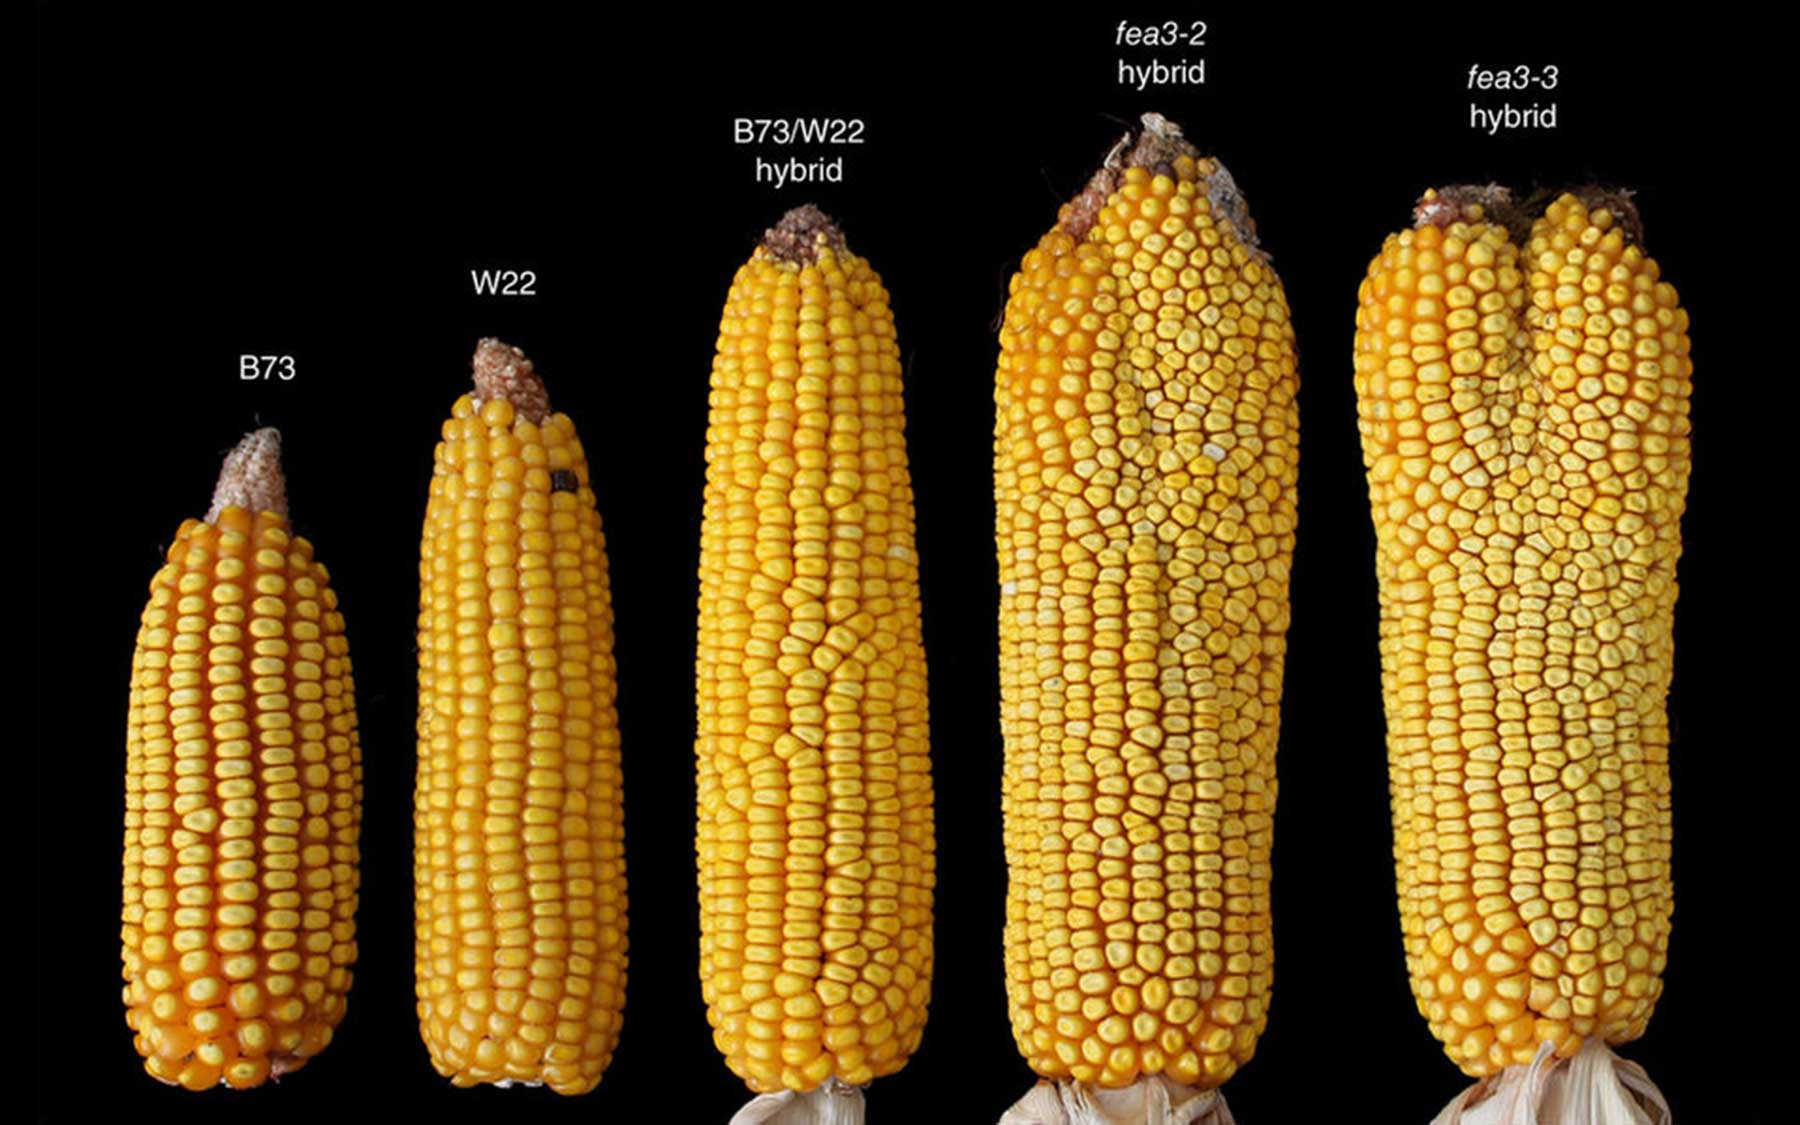 maize varieties